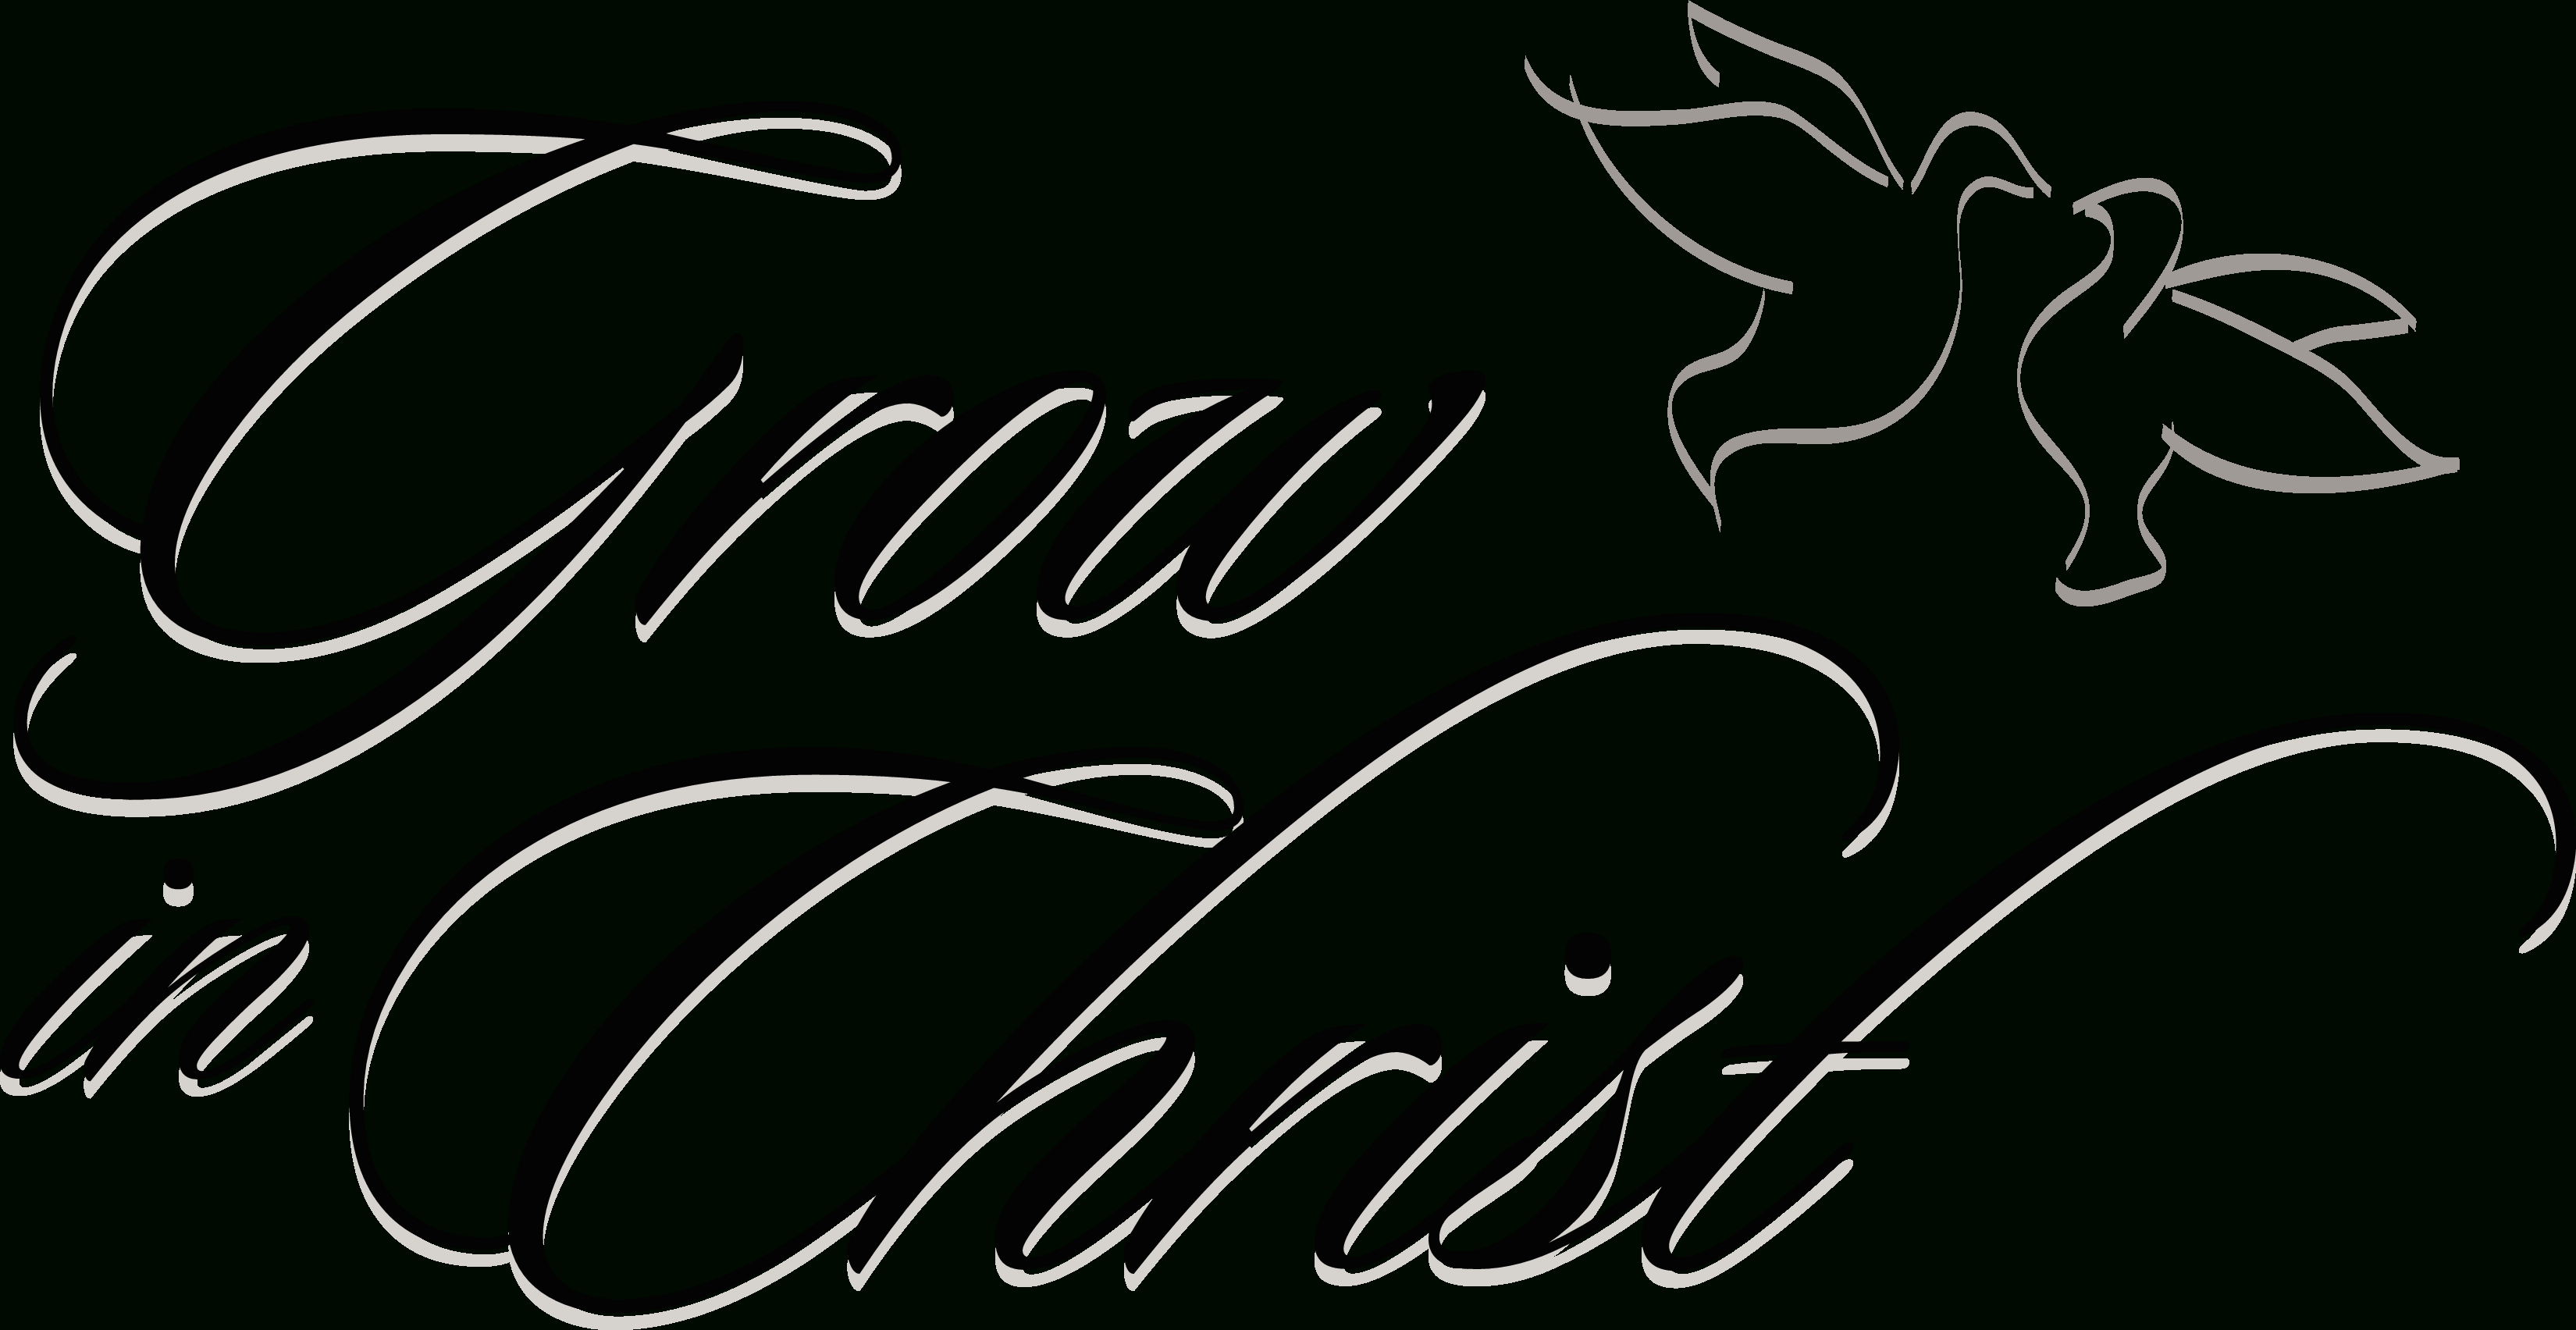 Religious Free Printable Christian Clip Art Clipart The - Clipartbarn - Free Printable Christian Art